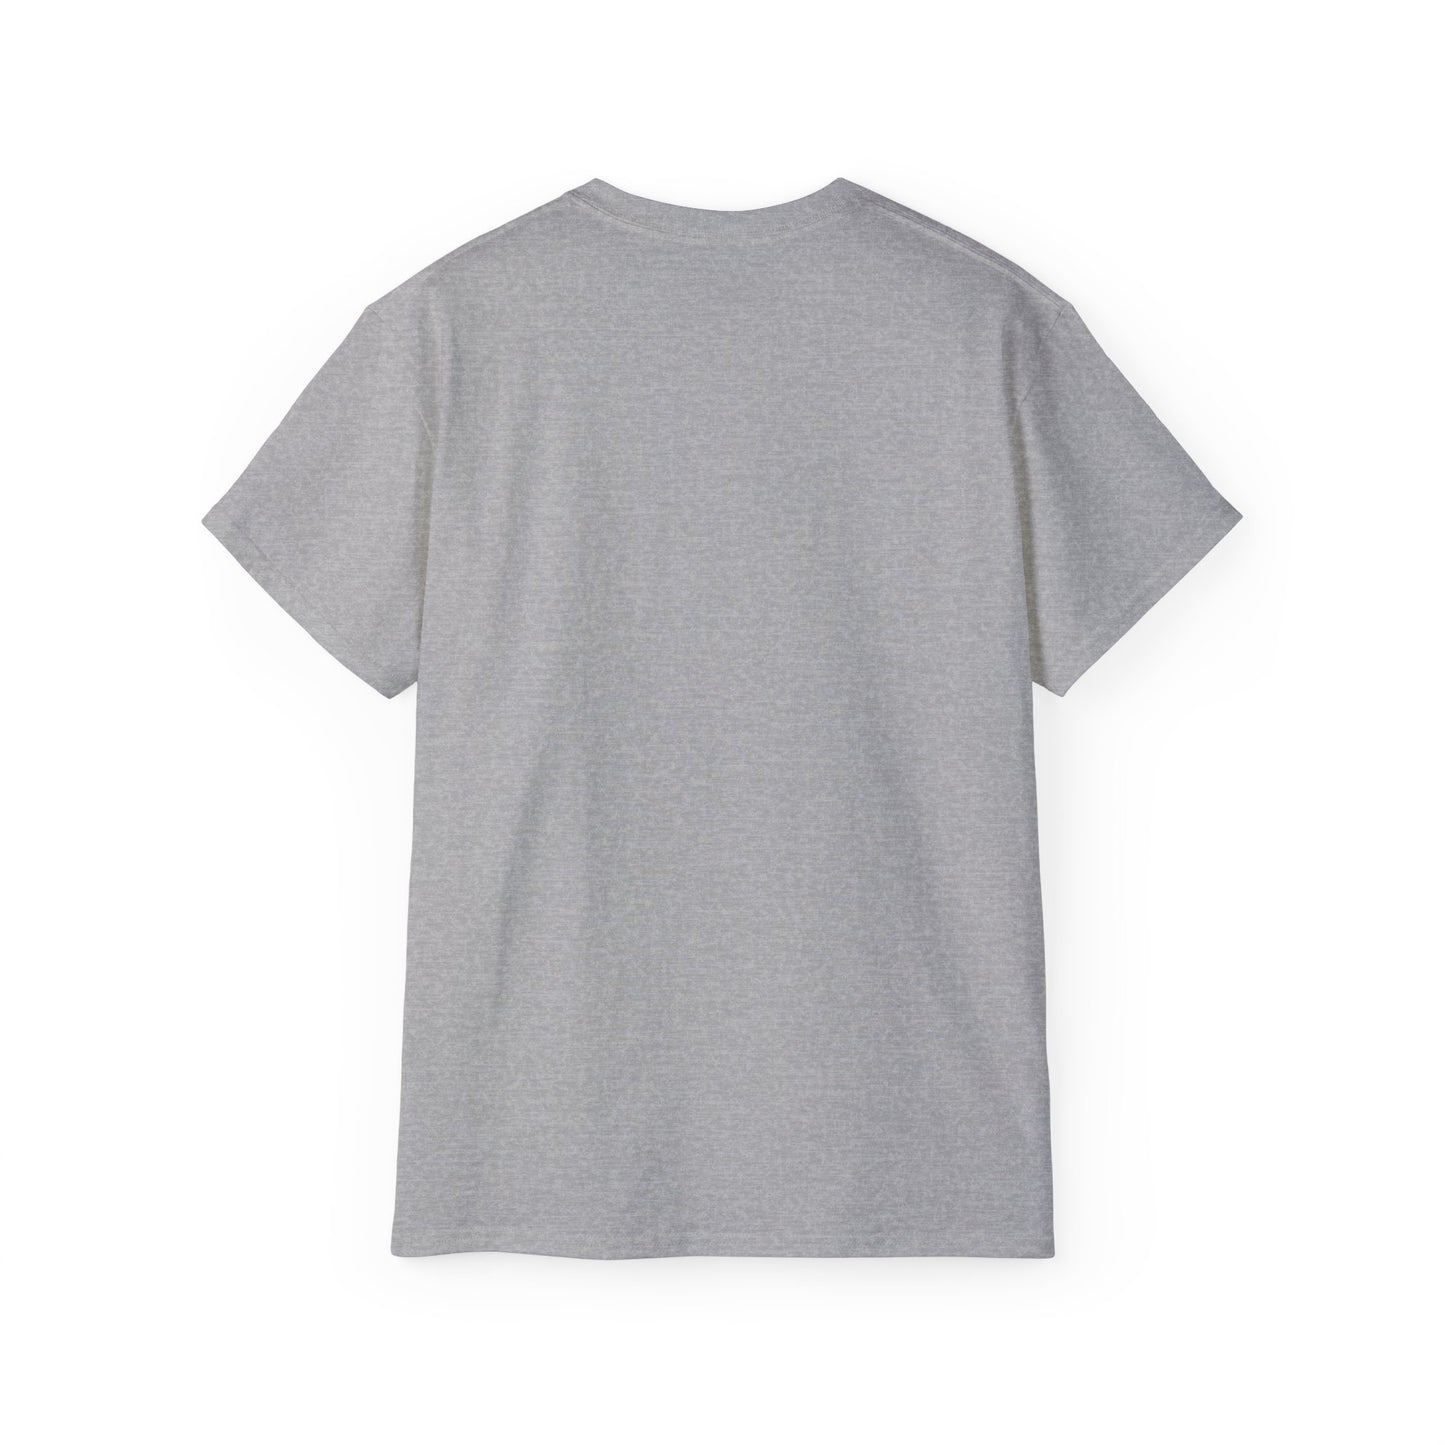 Unisex Ultra Cotton design (Girl's Best Friend) T-shirt